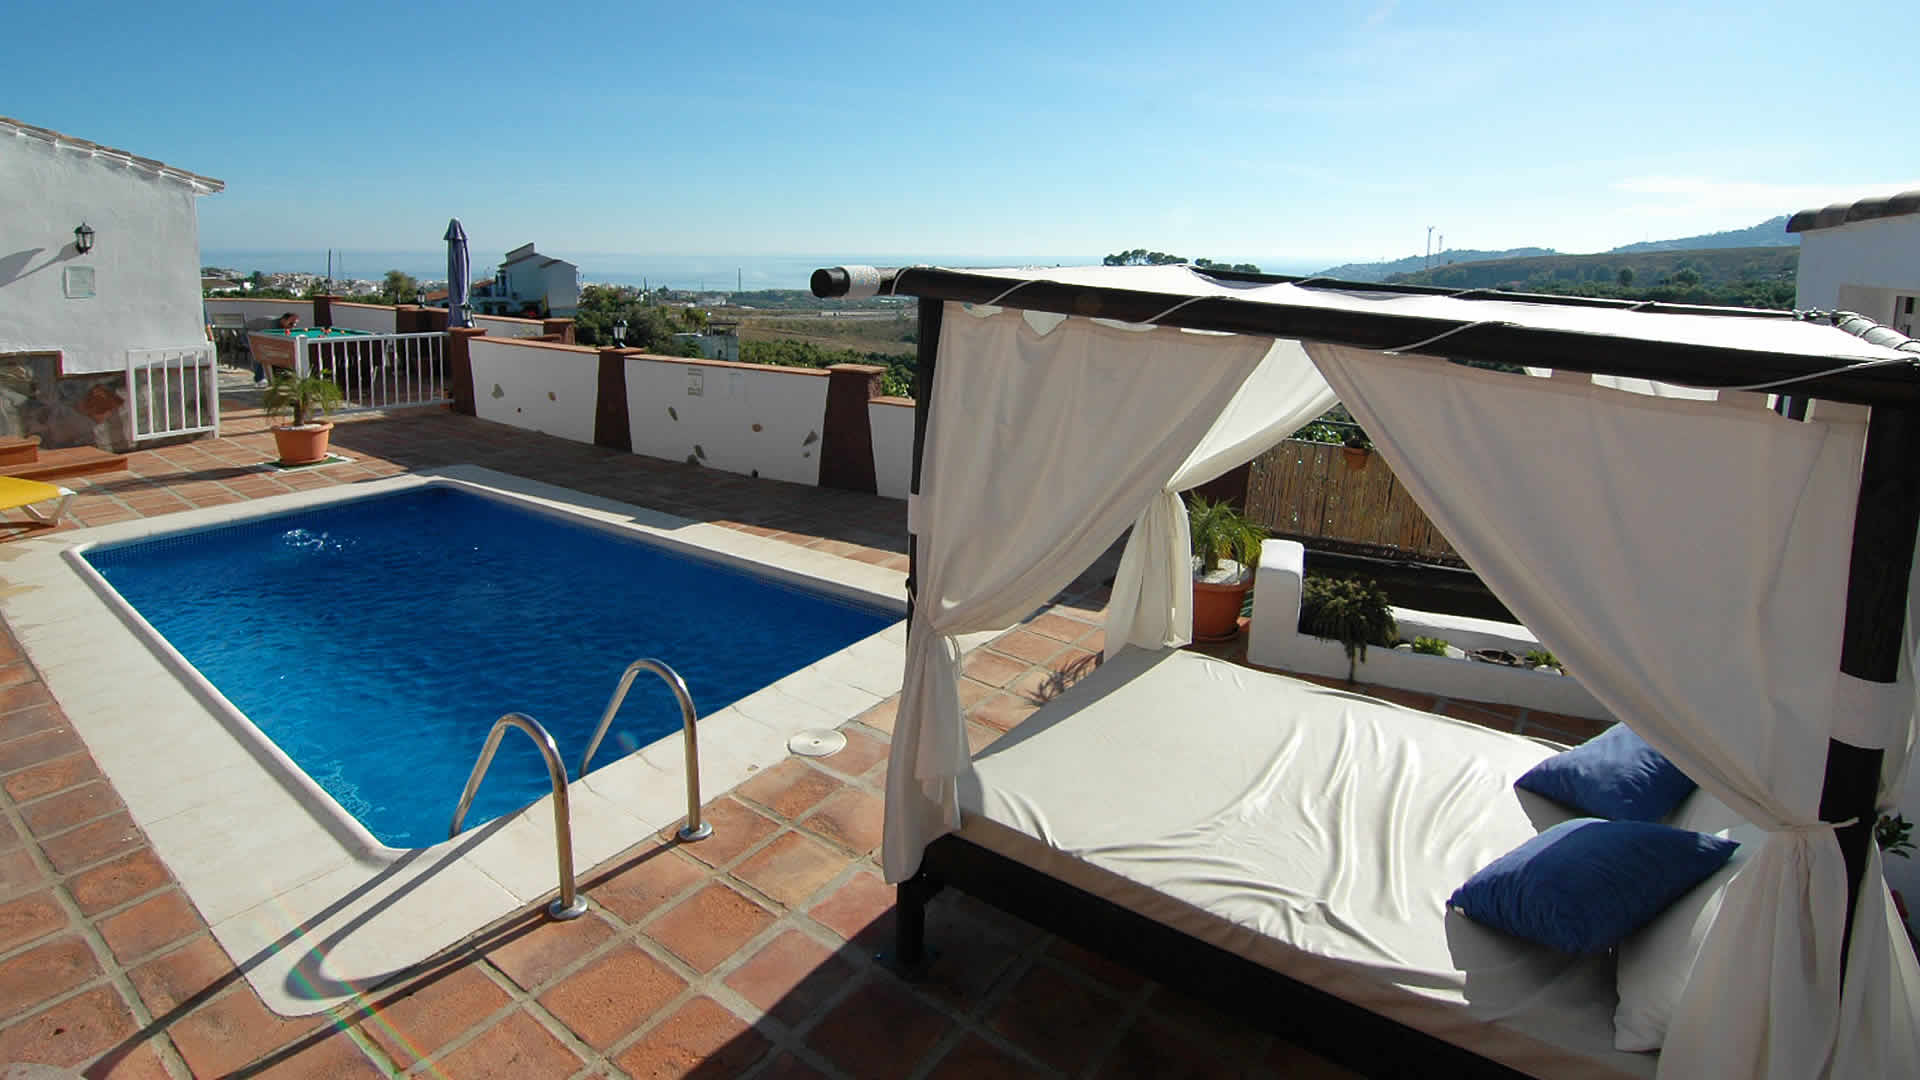 Ferienhaus mit Privatpool für 2 Personen ca.   in Spanien